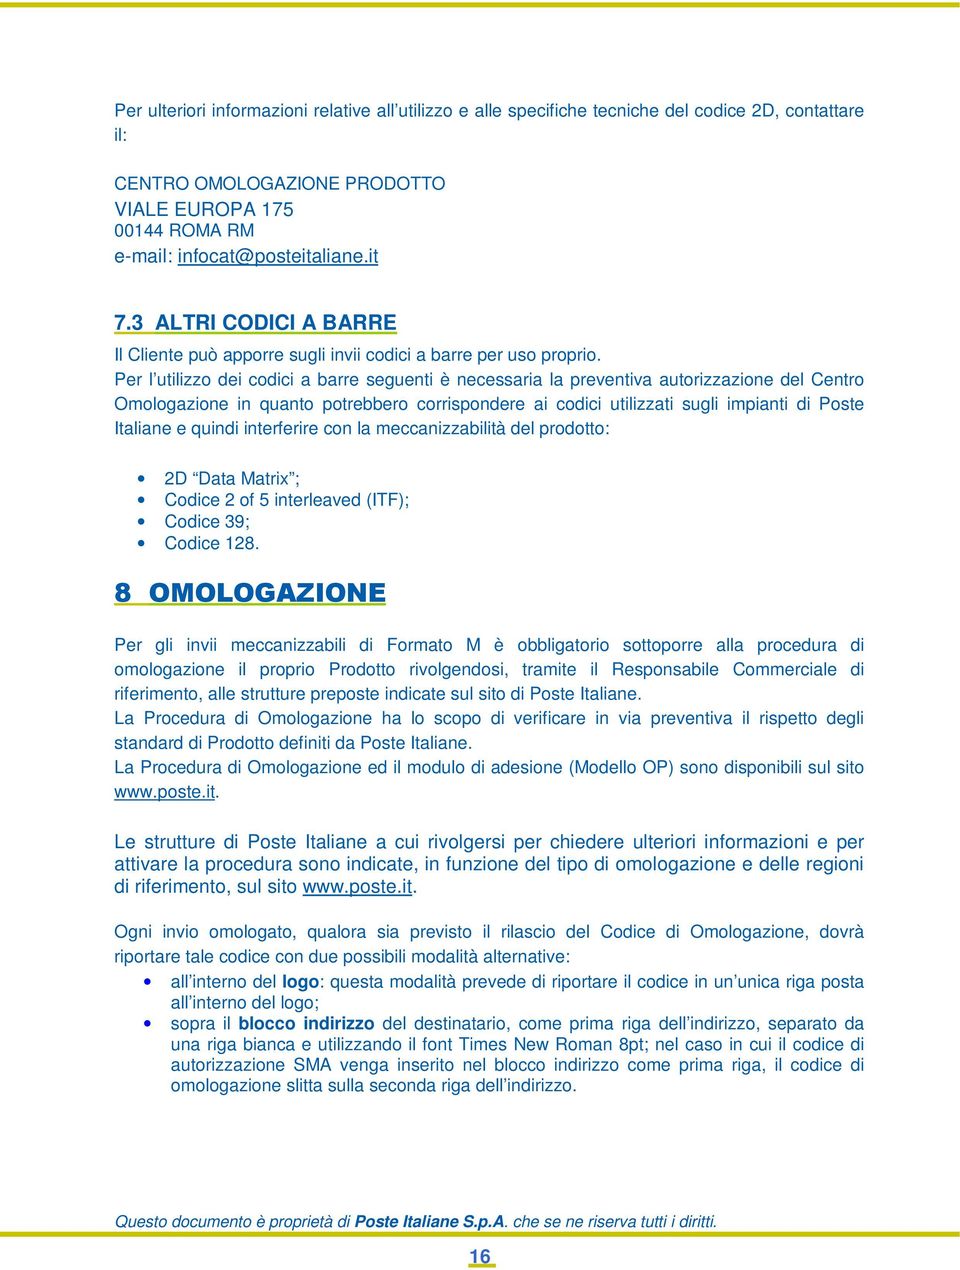 Per l utilizzo dei codici a barre seguenti è necessaria la preventiva autorizzazione del Centro Omologazione in quanto potrebbero corrispondere ai codici utilizzati sugli impianti di Poste Italiane e